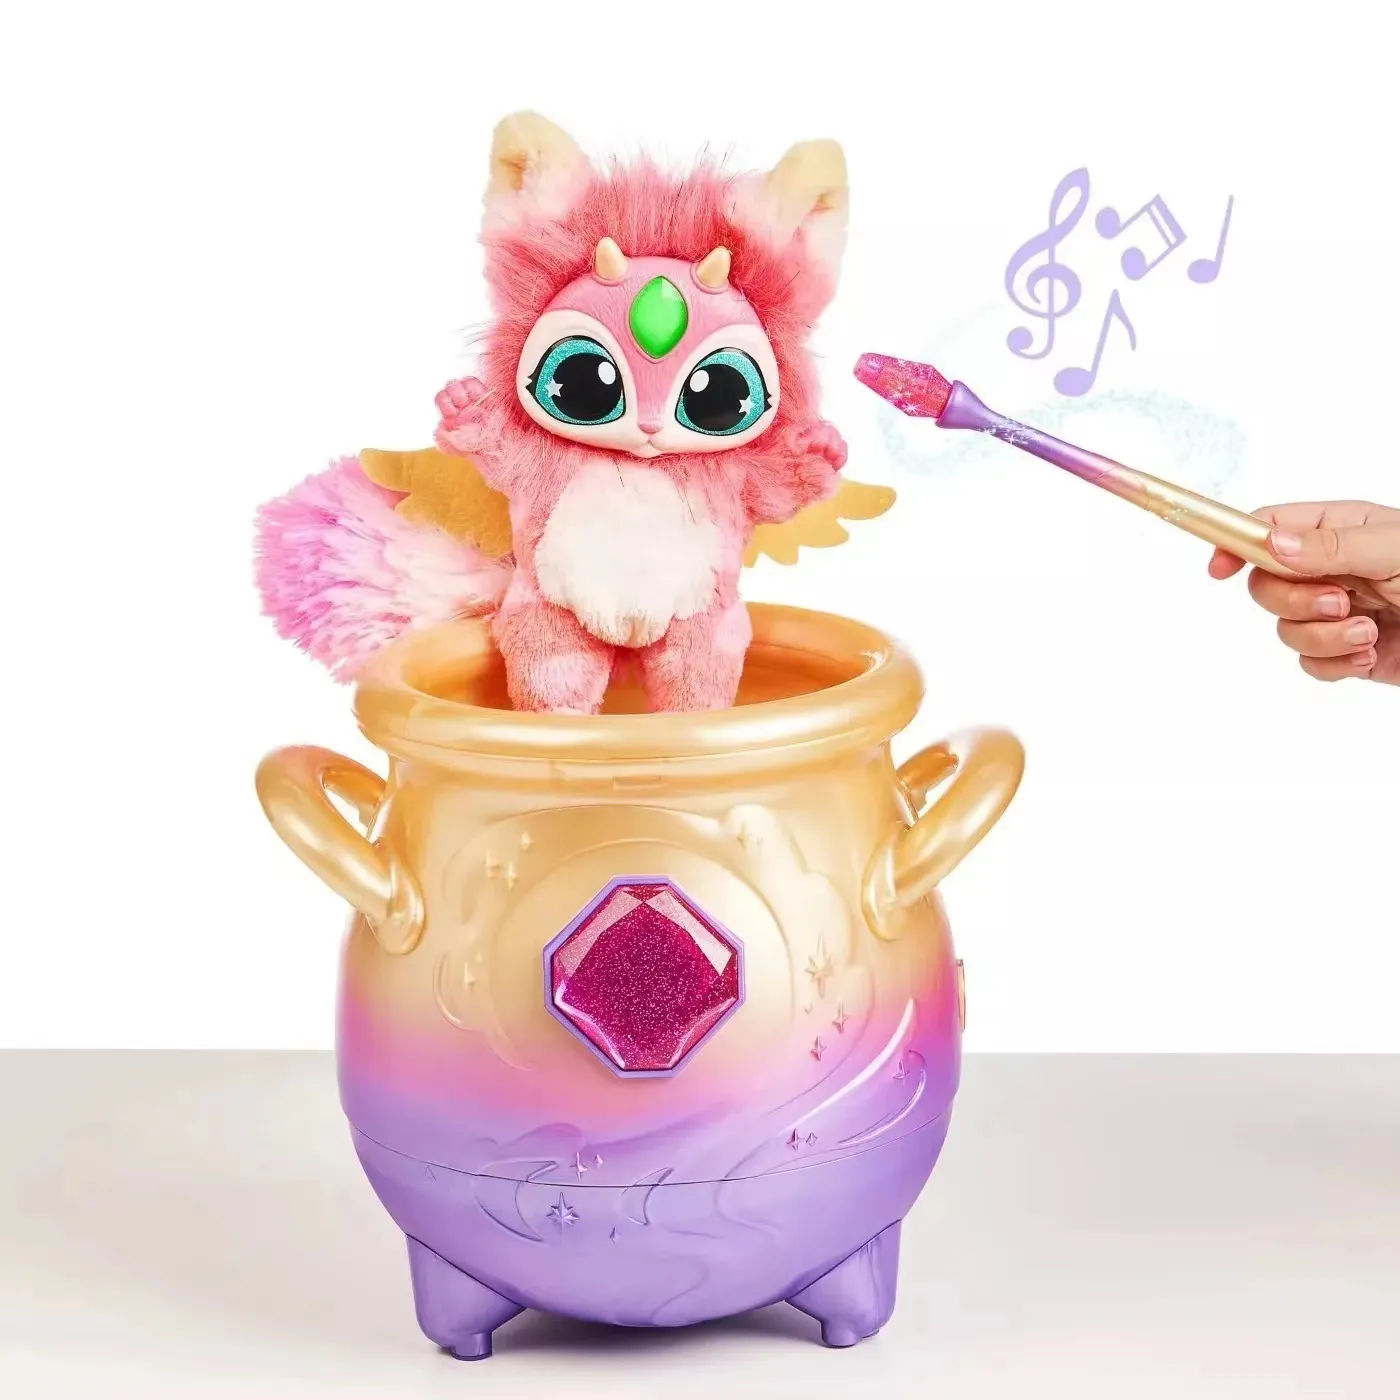 Articles de nouveauté Objets décoratifs Figurines Magic Mixies Pot de brouillard magique surprise animal de compagnie lumière sonore boîte aveugle interactive jouets authenti273T